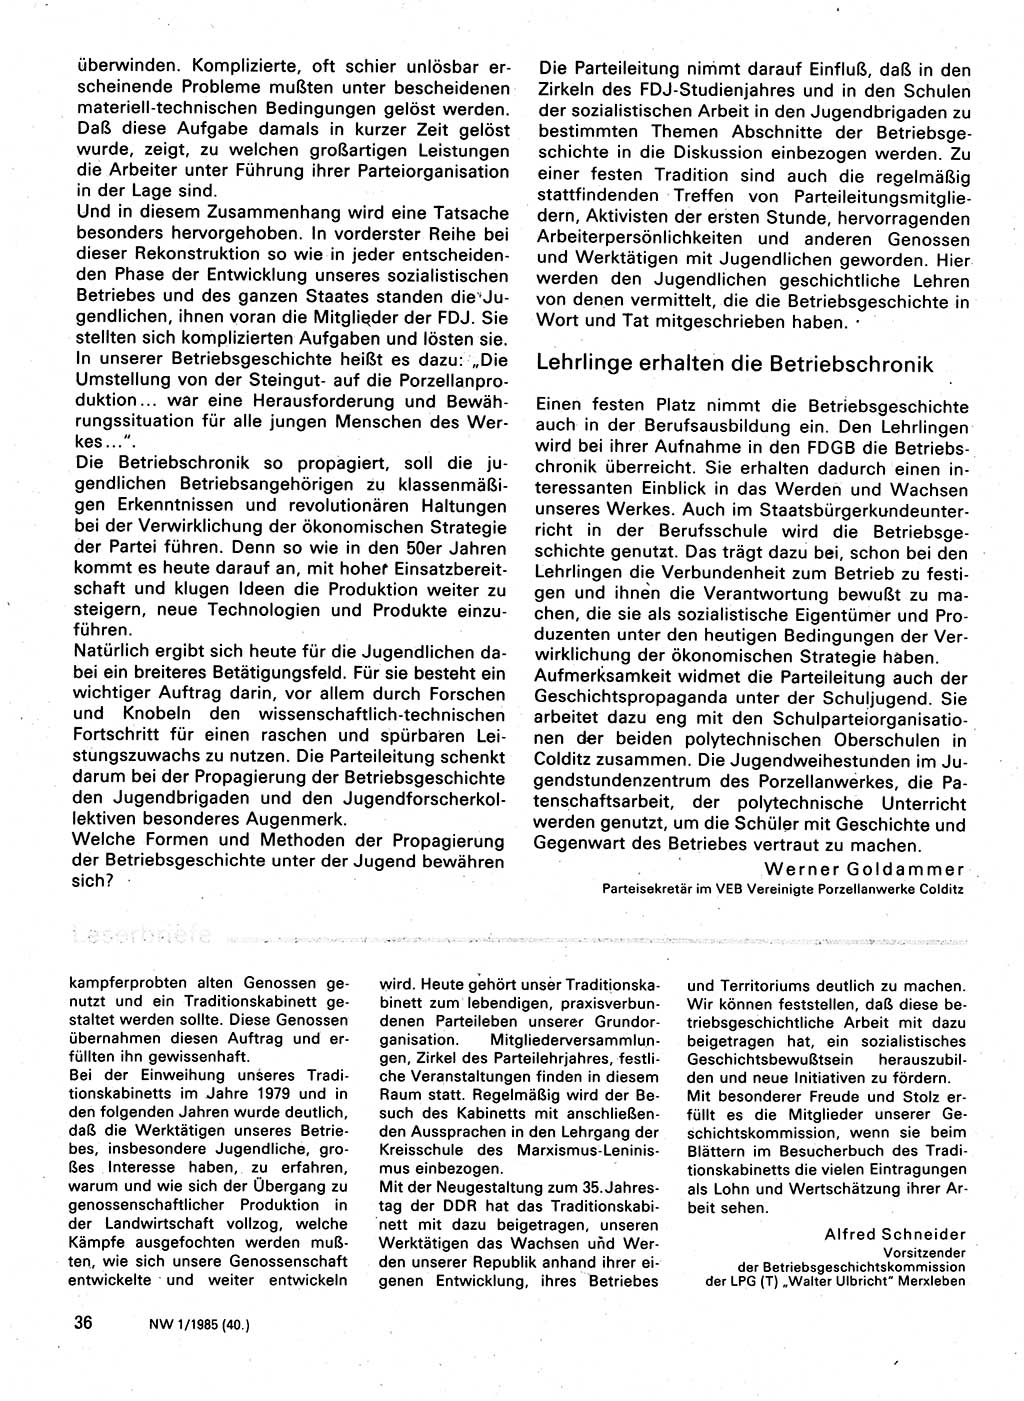 Neuer Weg (NW), Organ des Zentralkomitees (ZK) der SED (Sozialistische Einheitspartei Deutschlands) für Fragen des Parteilebens, 40. Jahrgang [Deutsche Demokratische Republik (DDR)] 1985, Seite 36 (NW ZK SED DDR 1985, S. 36)